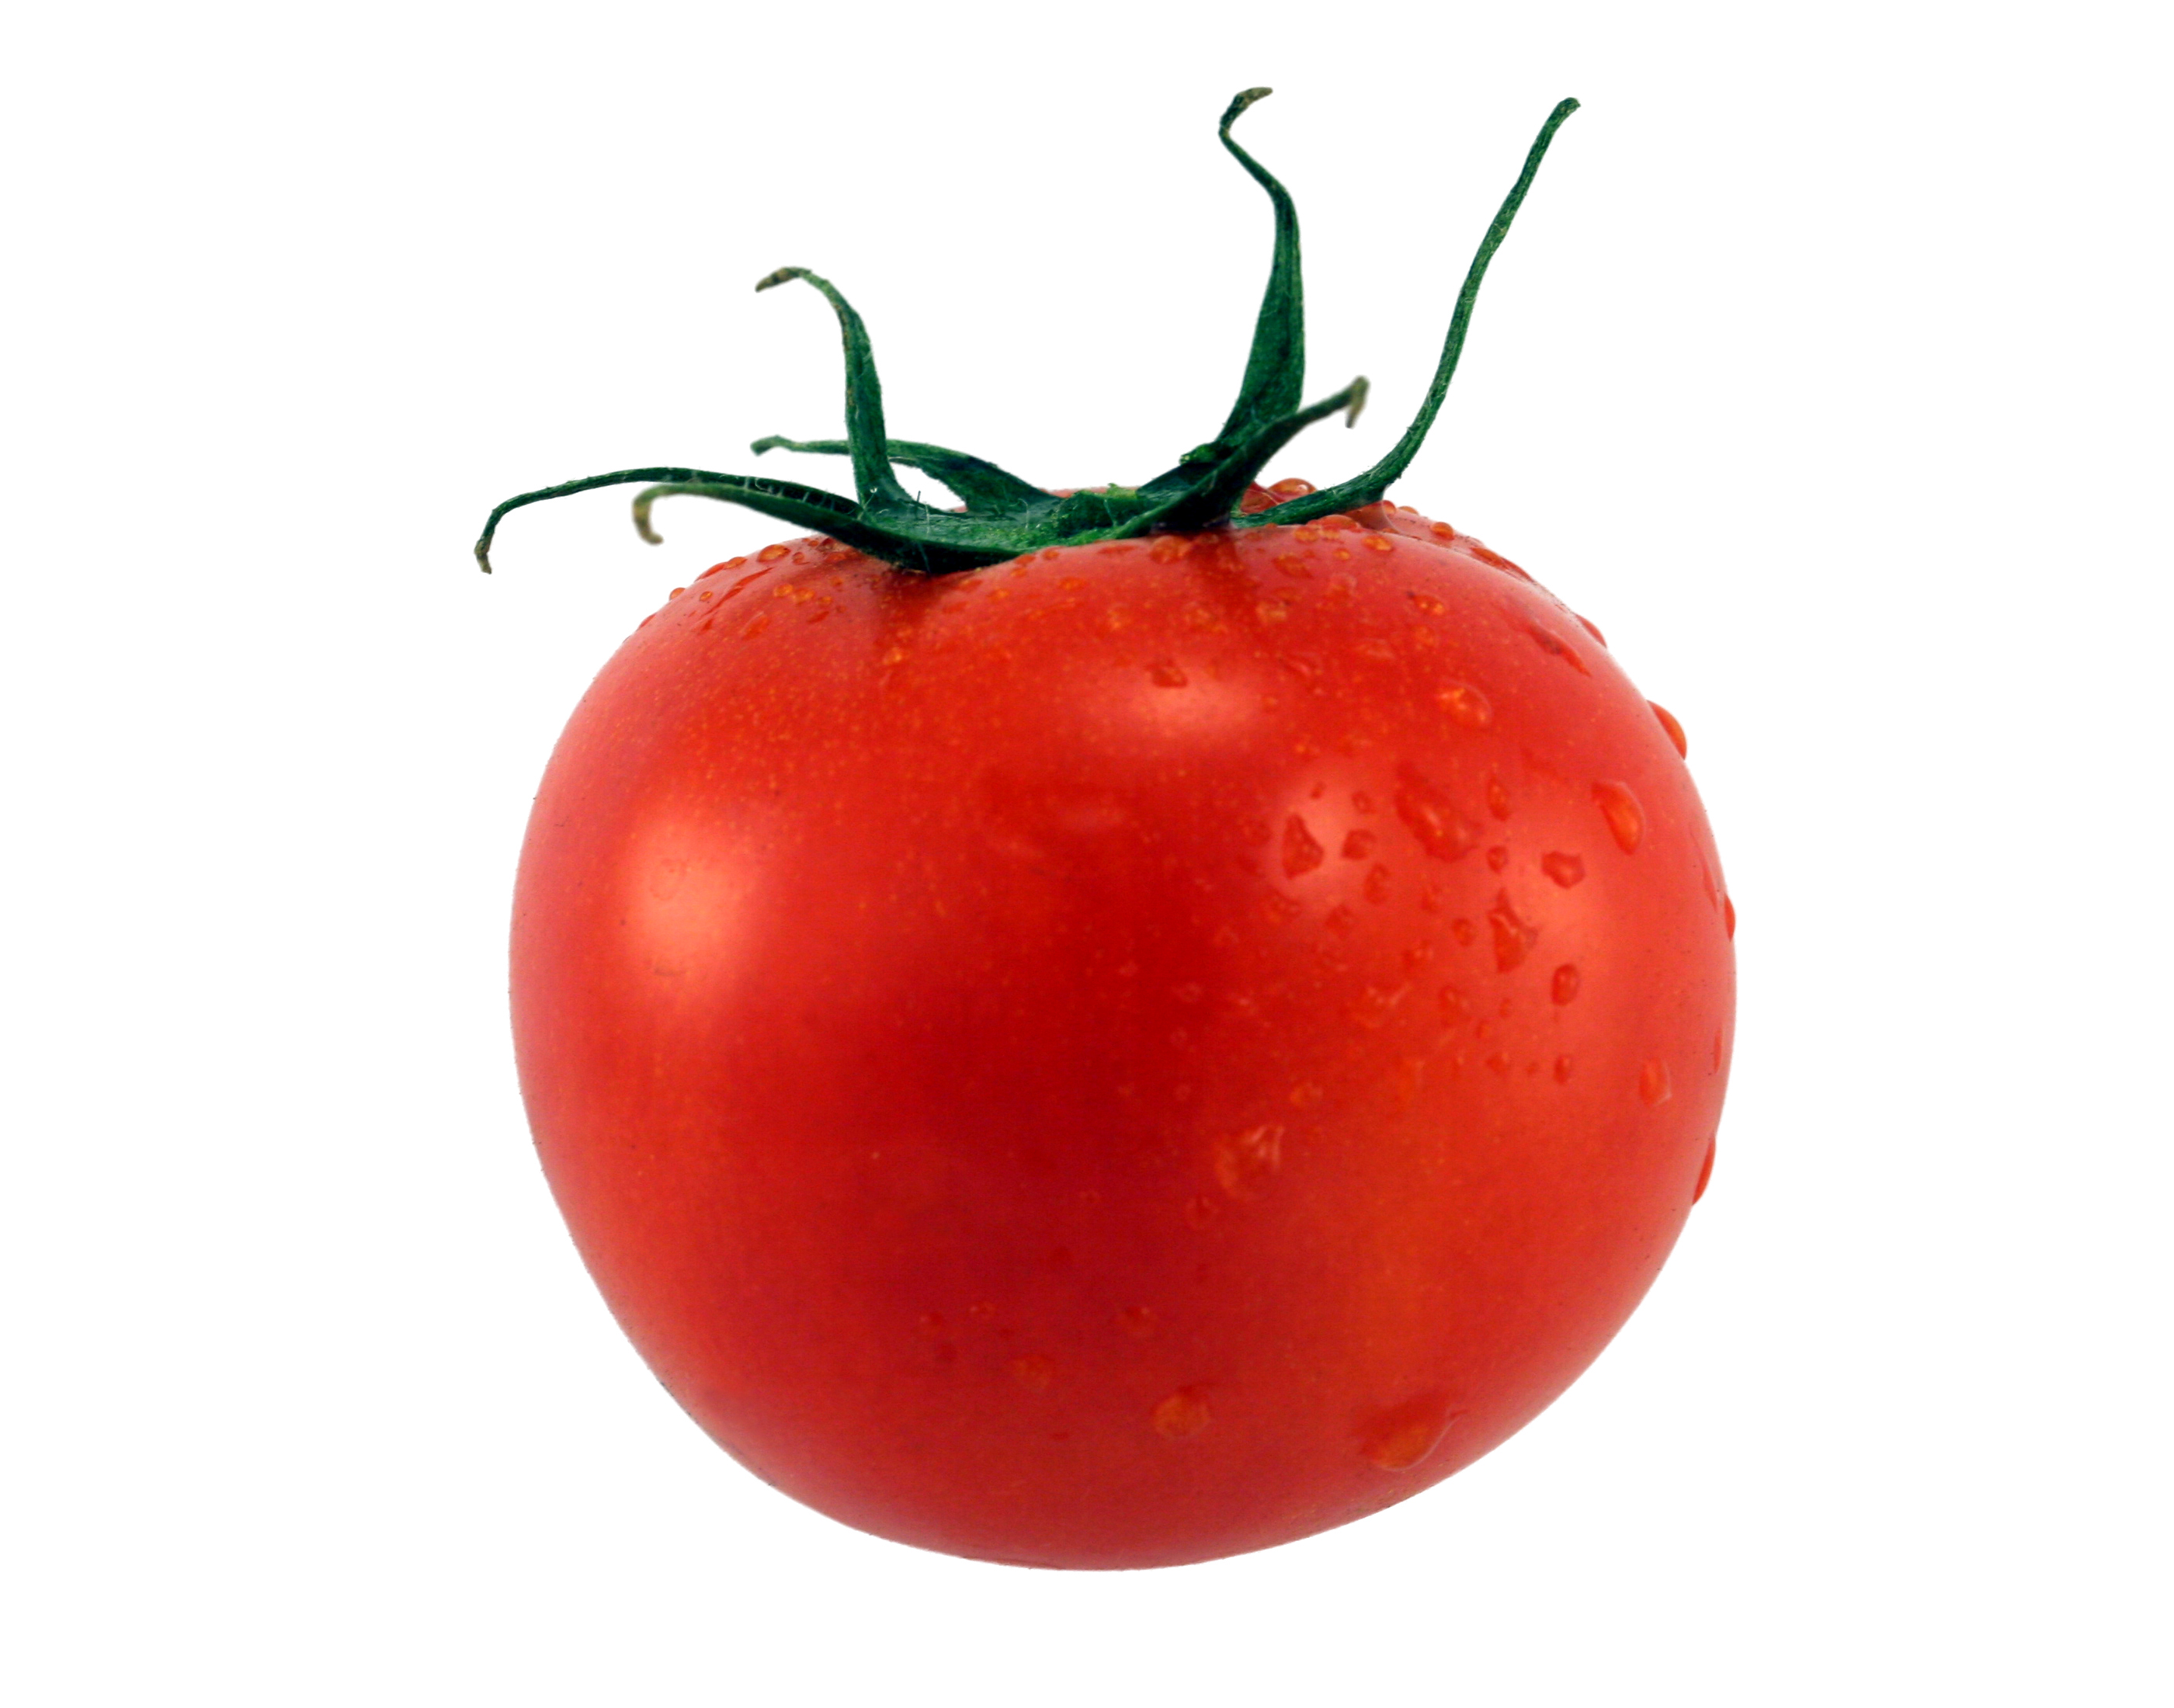 Картинка овощей по отдельности. Помидоры Королевич. Красный помидор.